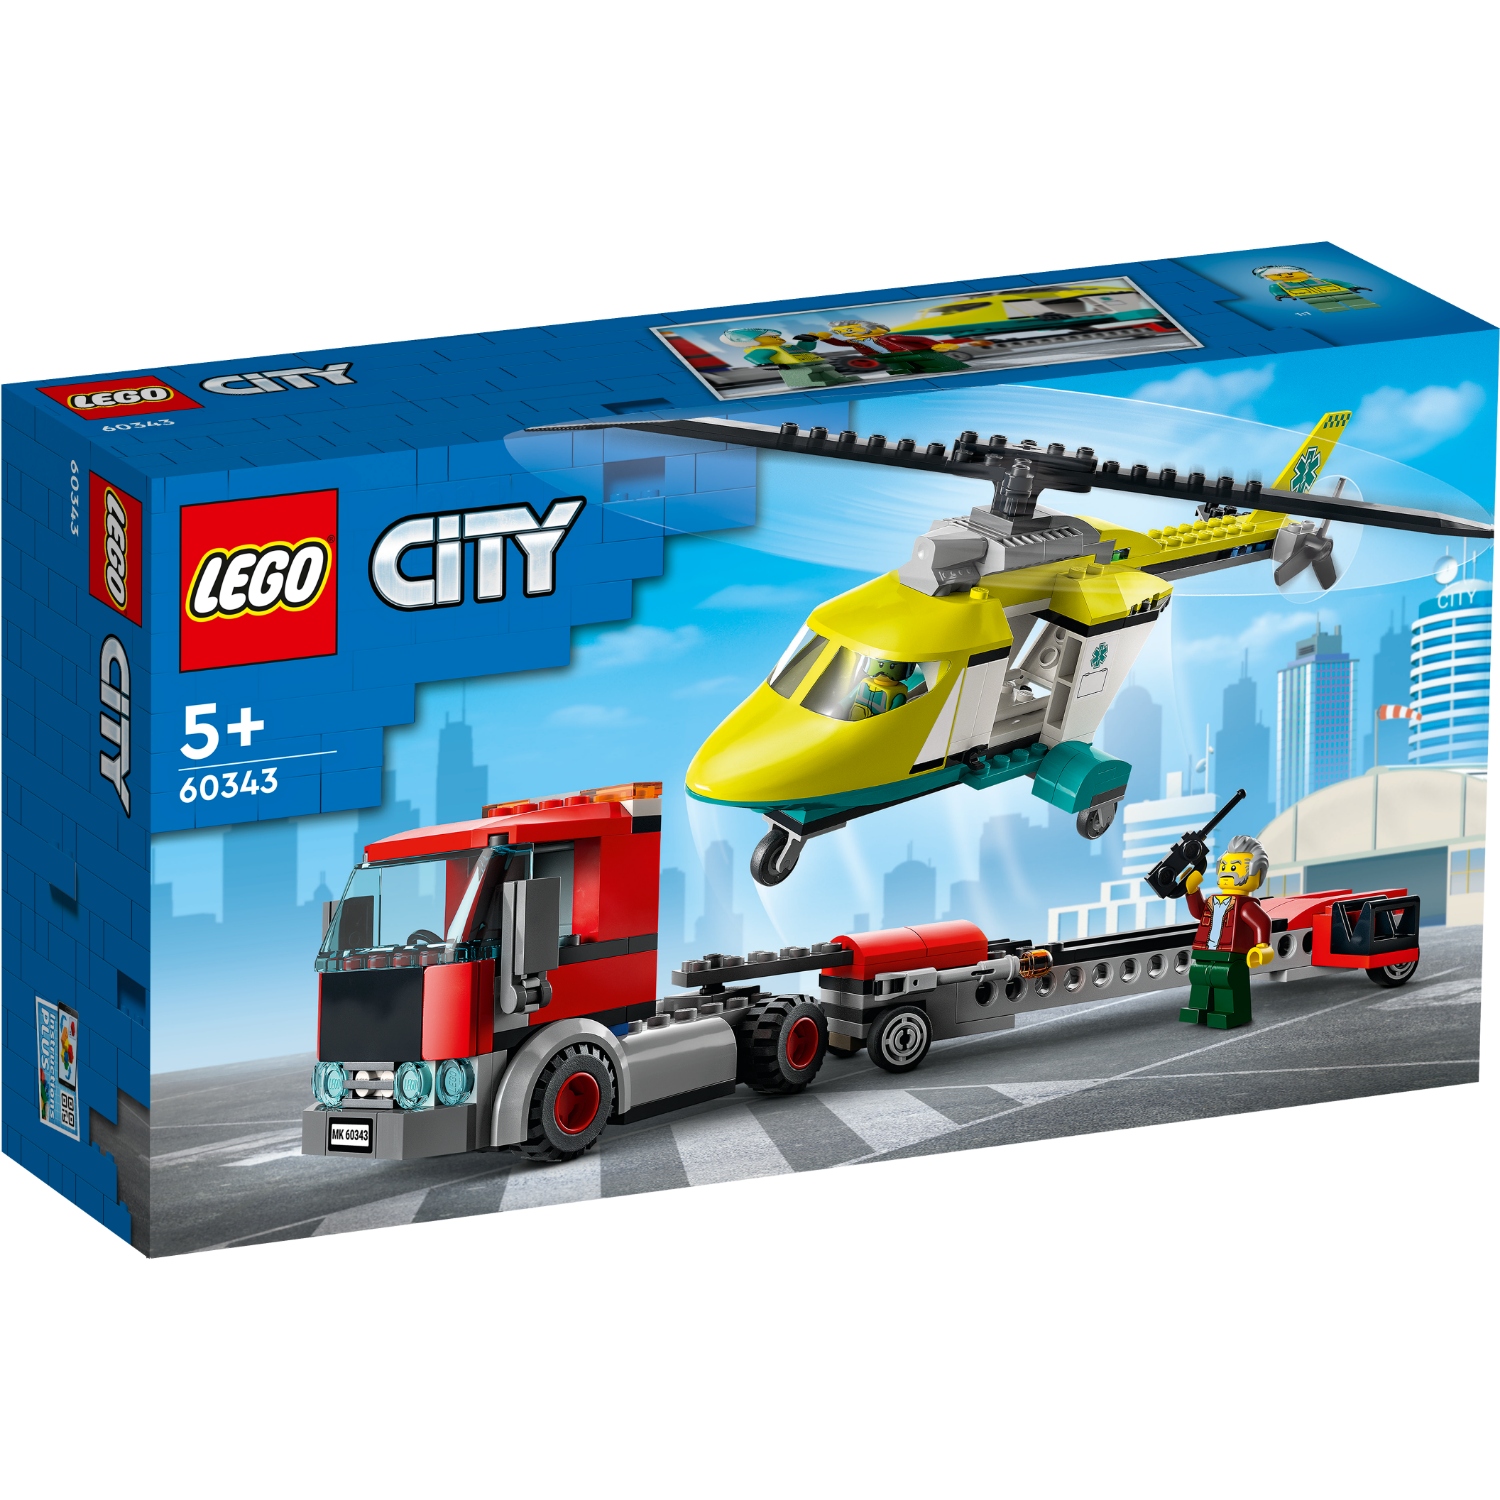 LEGO CITY 60343 REDDINGSHELI TRANSPORT - 411 3443 - 527097